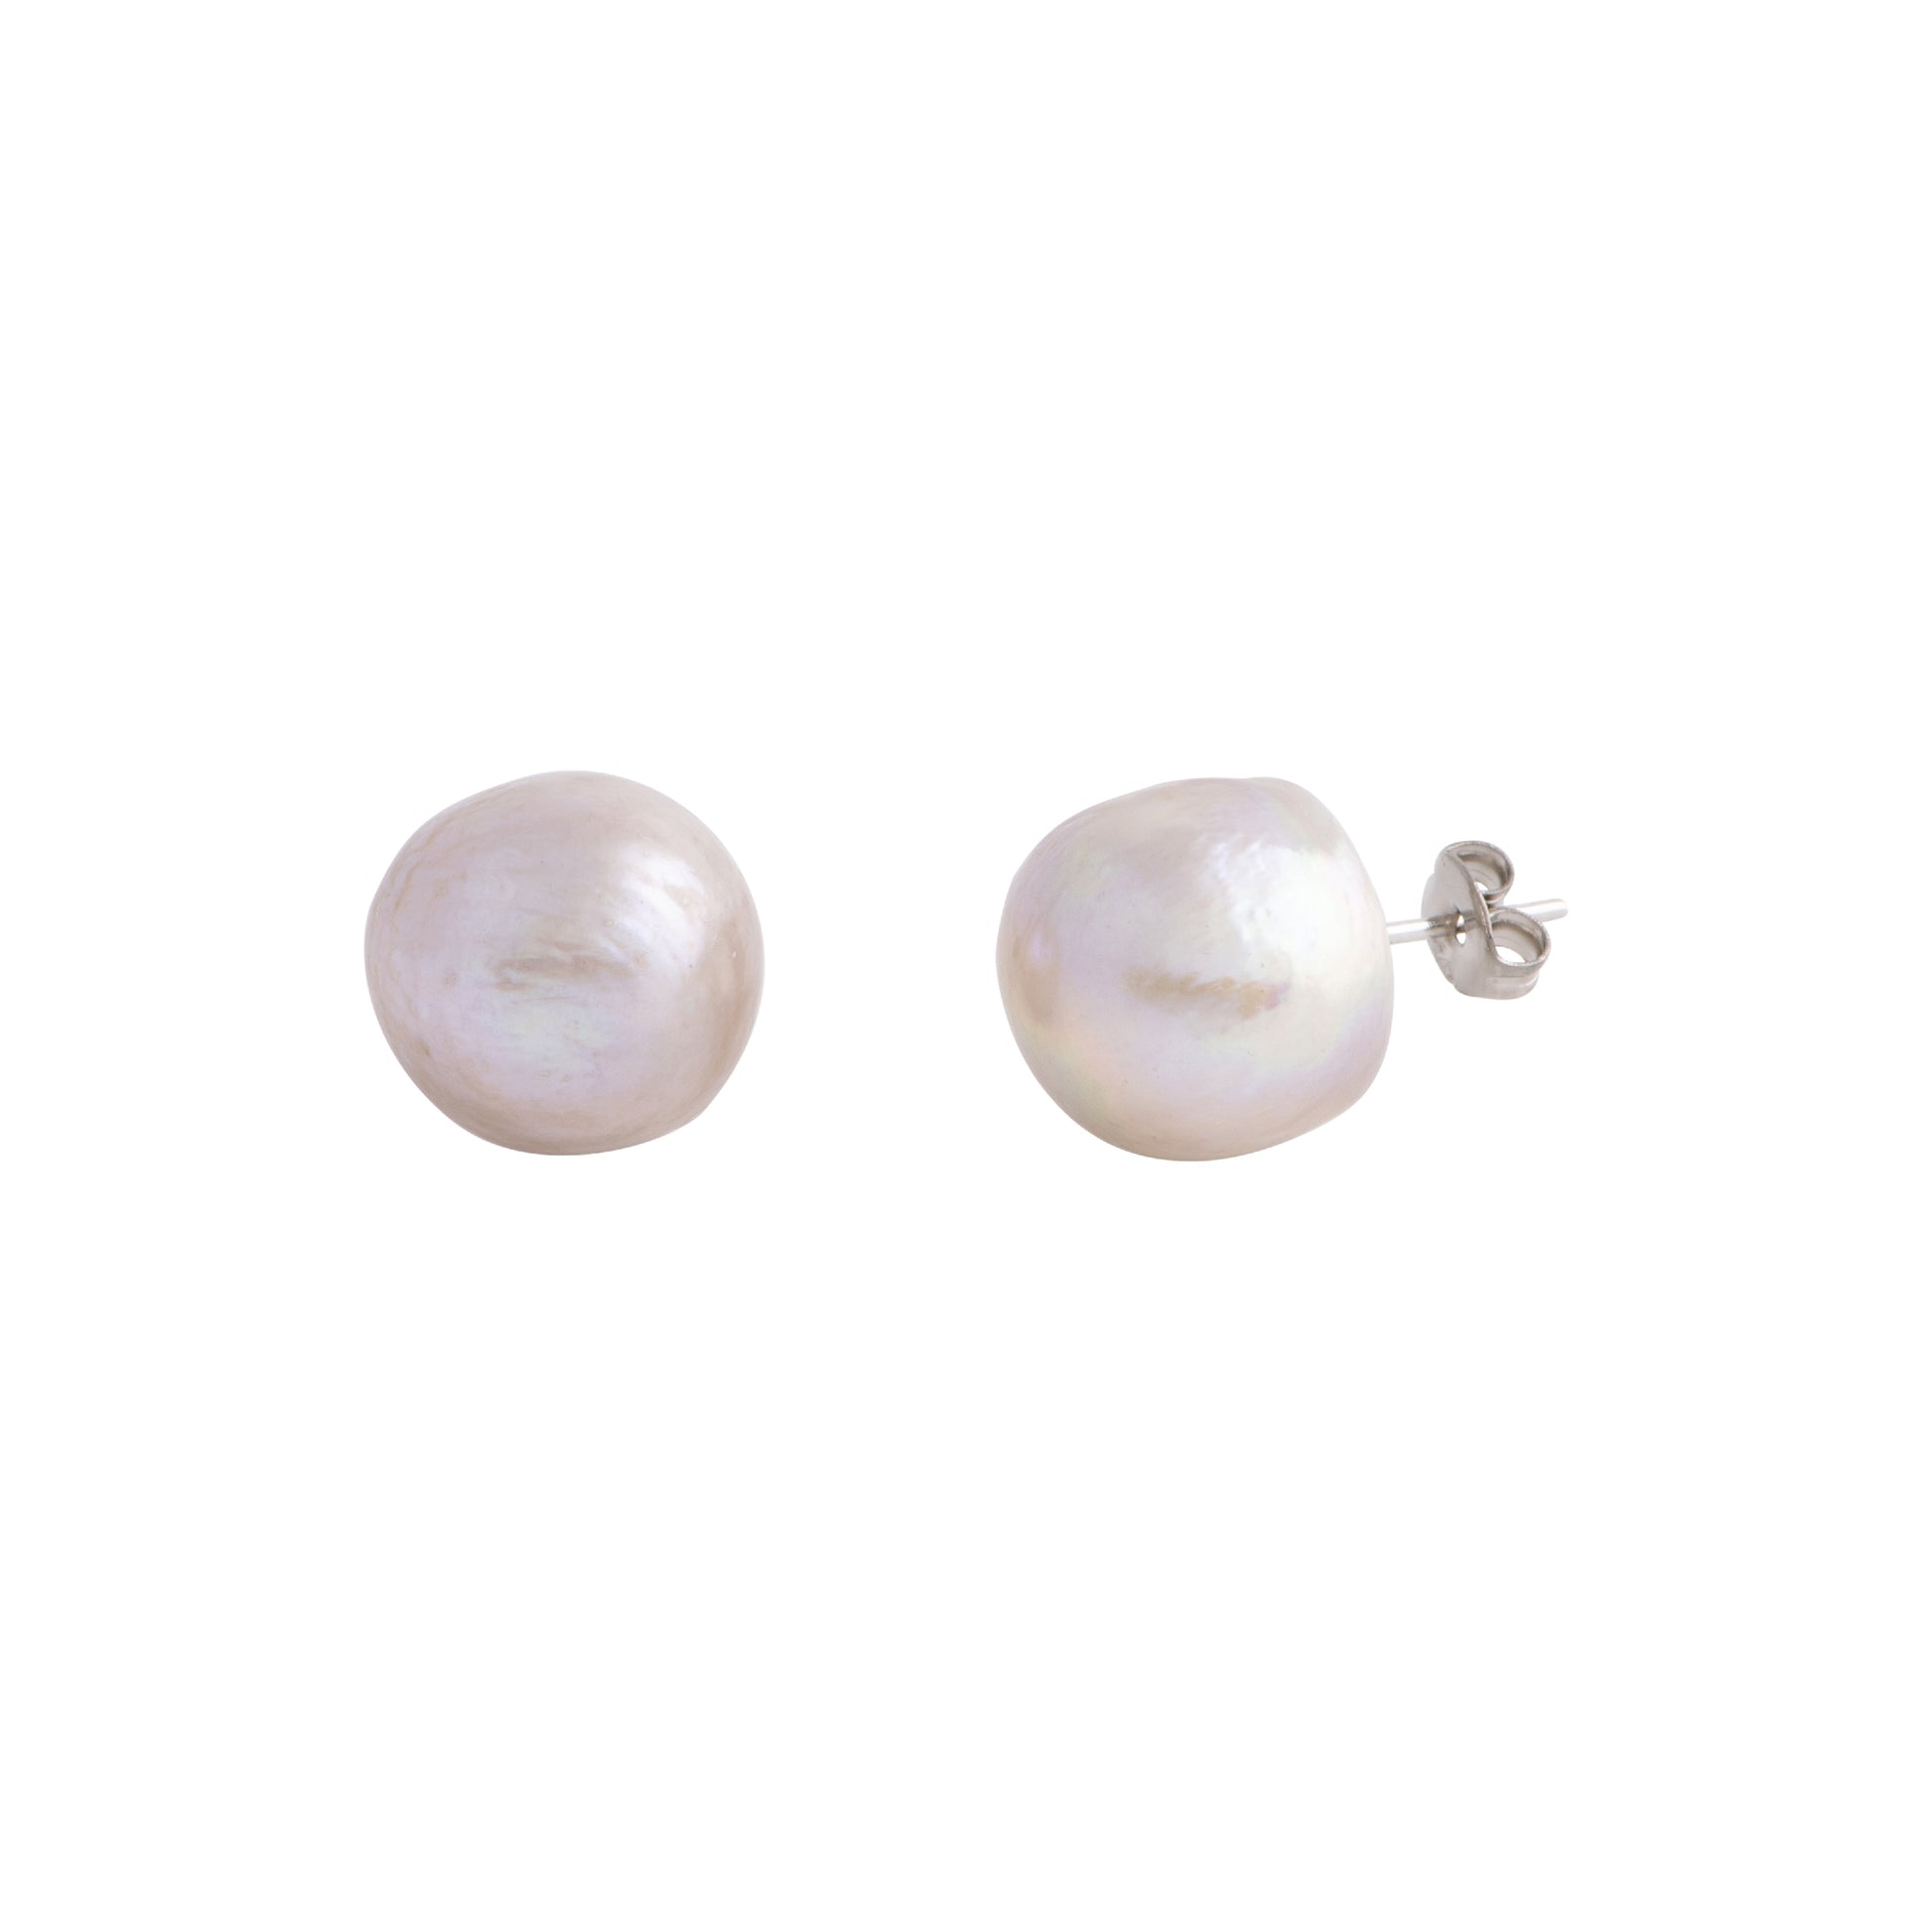 Elara - Large (12 - 15mm) pearl nickle-free earrings (Champagne pearls)